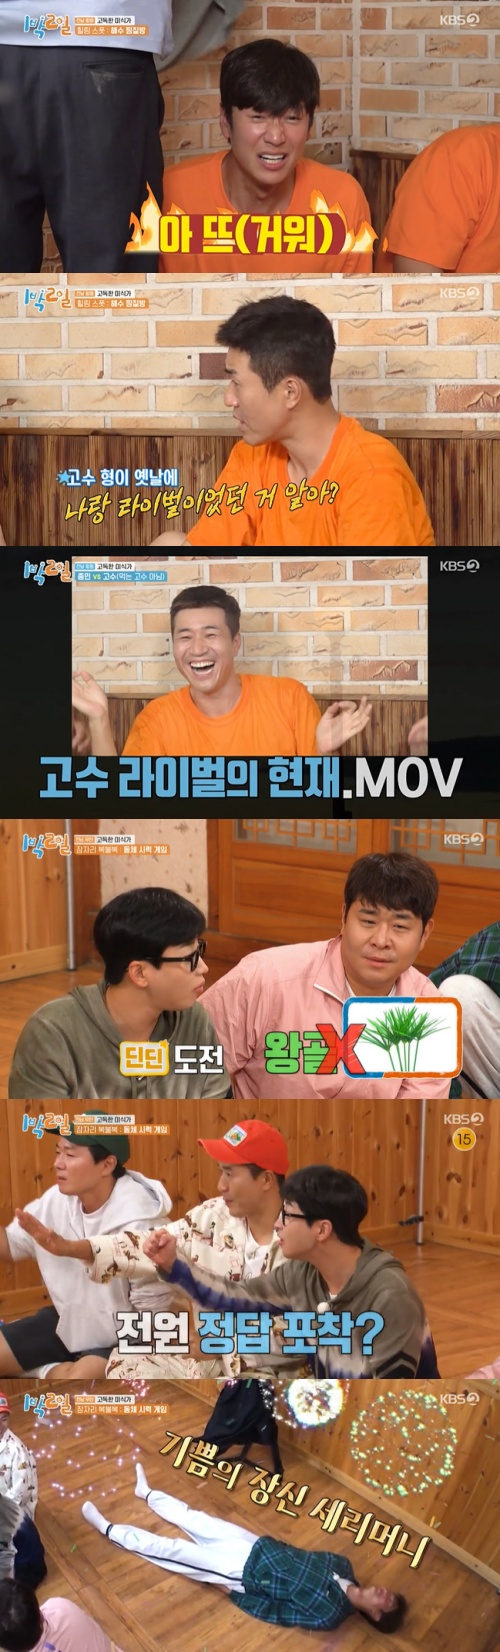 /사진=KBS 2TV 예능프로그램 '1박 2일 시즌4'(이하 '1박 2일') 방소 화면 캡쳐